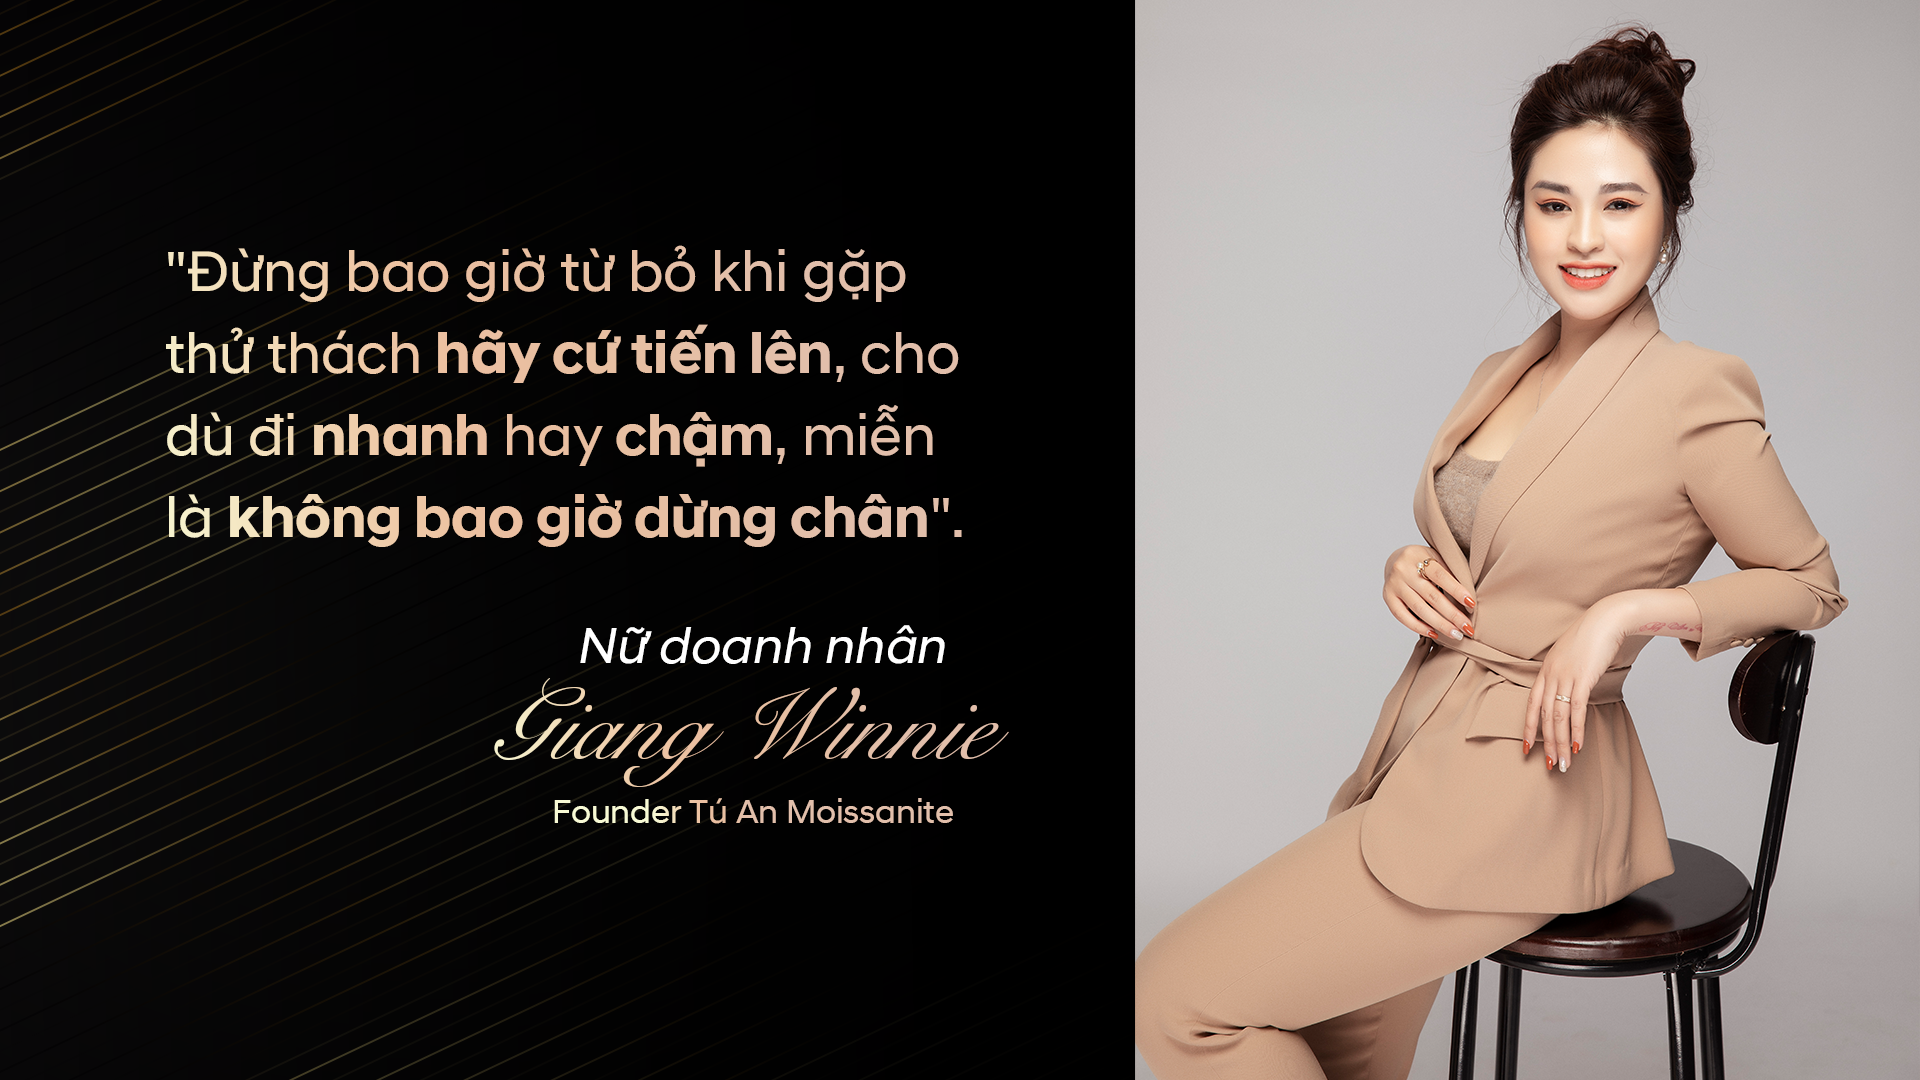 Xã hội - Founder Nguyễn Thanh Giang & Bí quyết thành công của phụ nữ hiện đại (Hình 5).